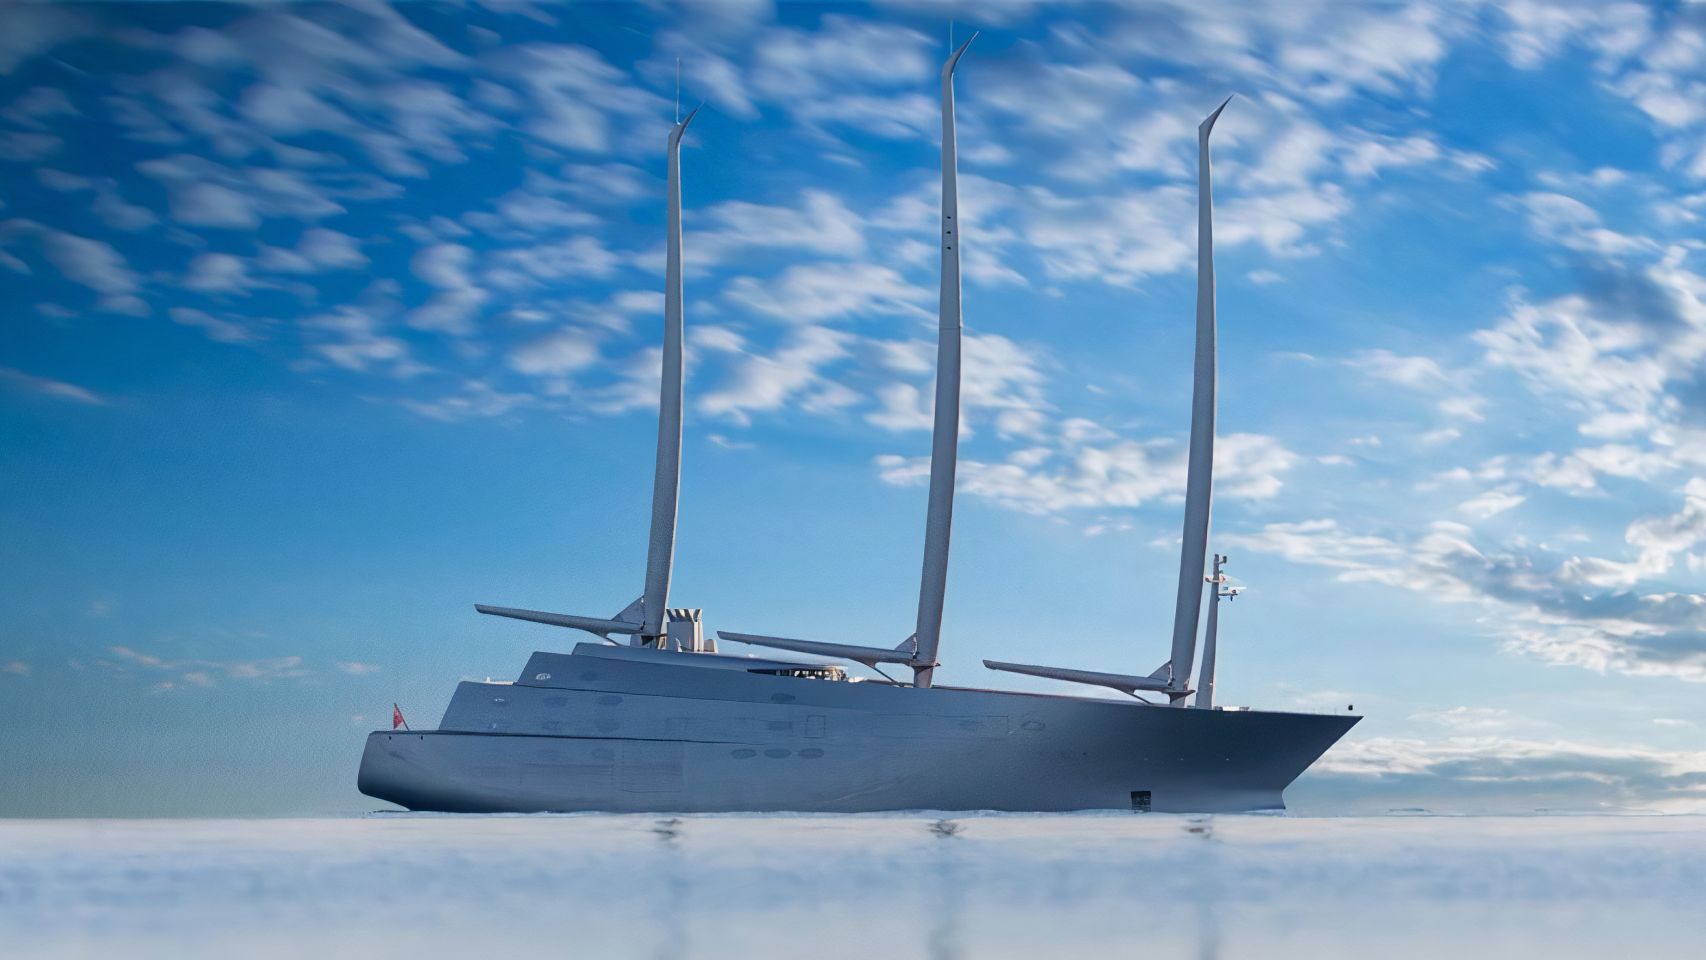 El velero de lujo es un diseño de Philippe Starck, diseñador industrial francés (Foto: Delujo.com)